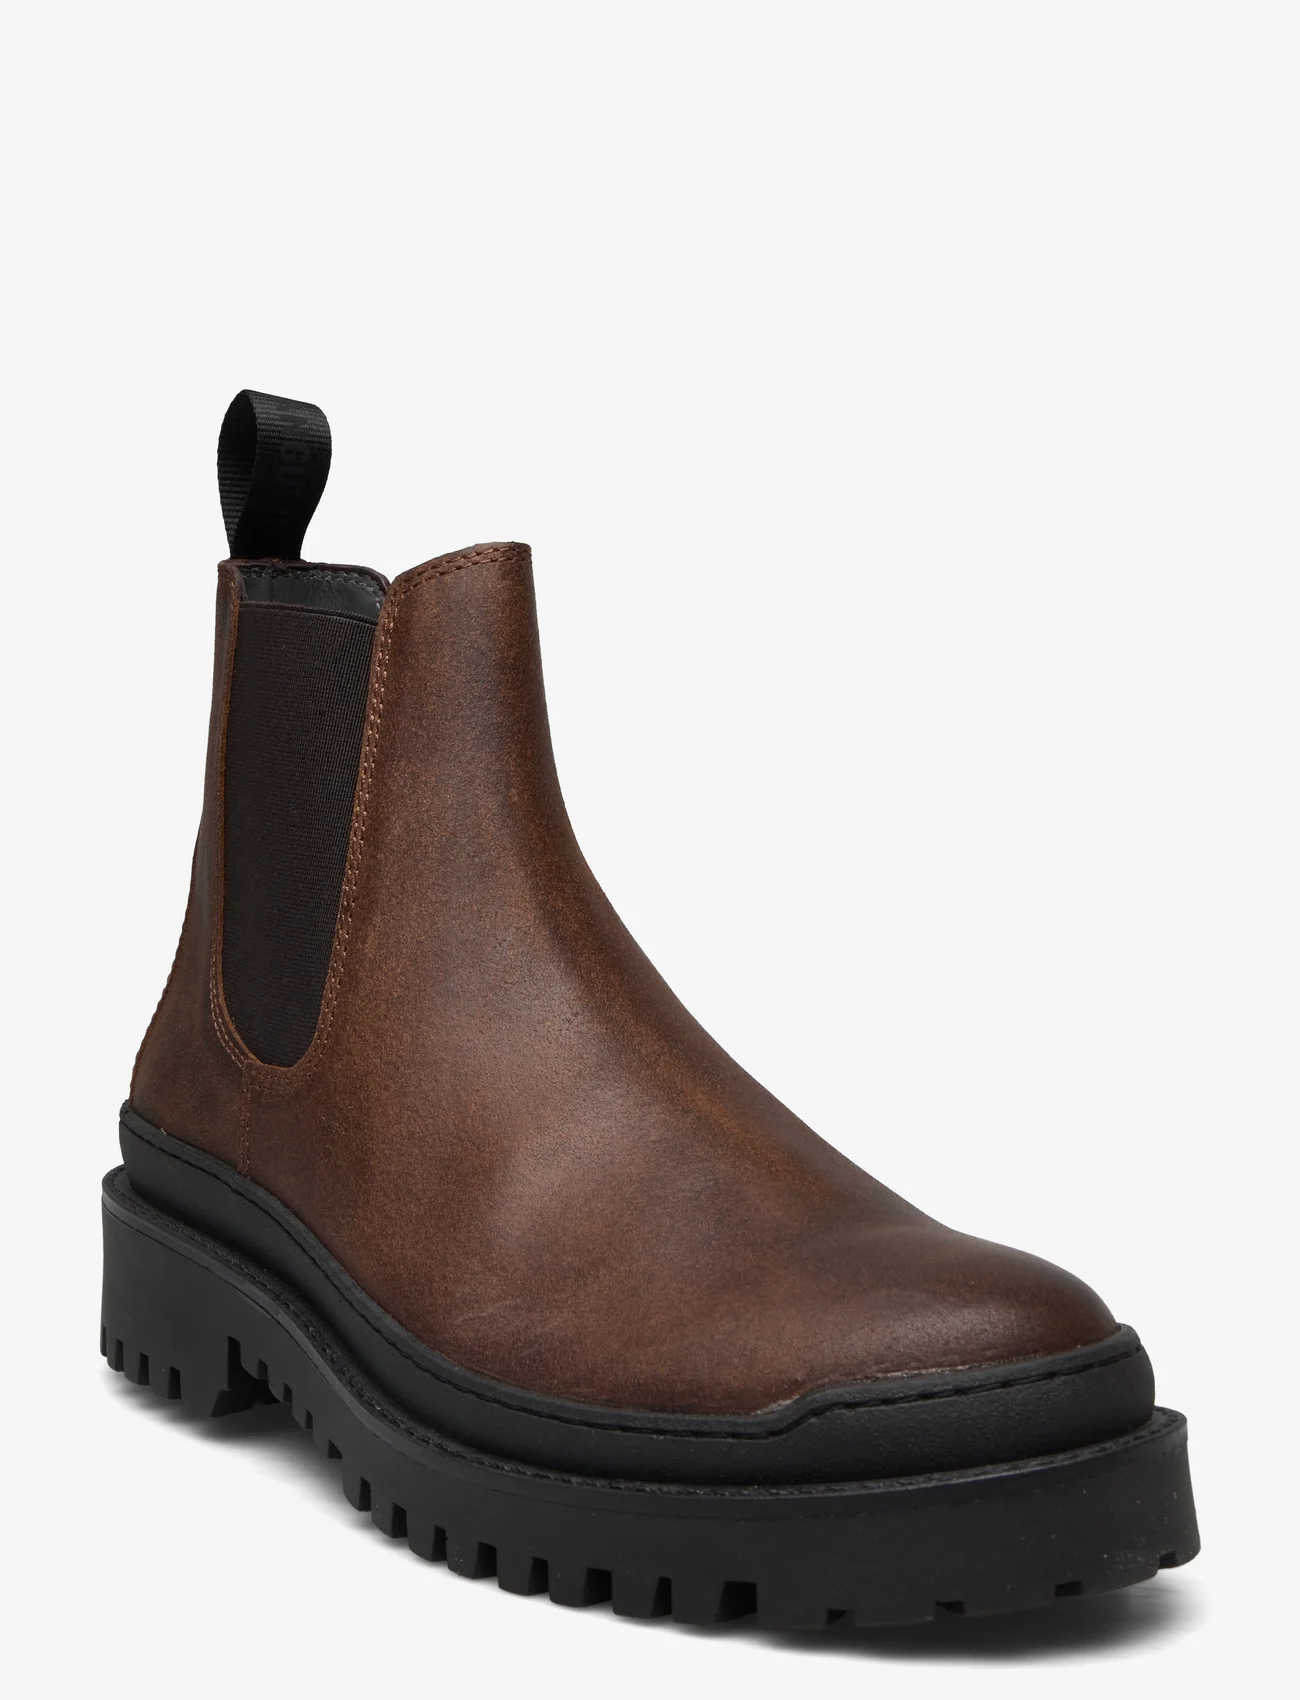 ANGULUS - Boots - flat - geburtstagsgeschenke - 2108/002 brown/brown - 0